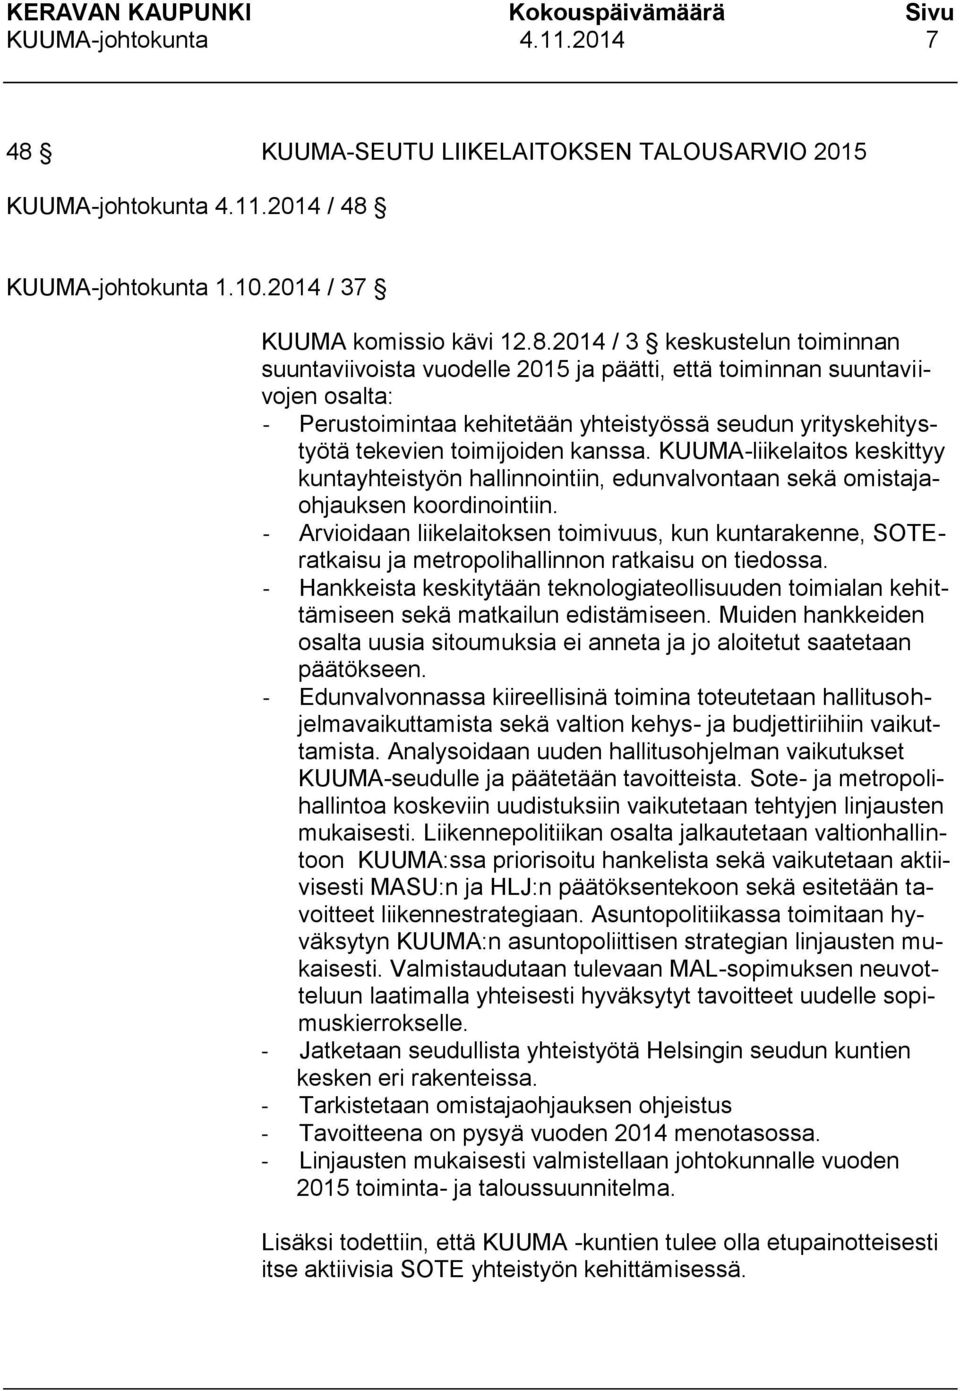 KUUMA-johtokunta 1.10.2014 / 37 KUUMA komissio kävi 12.8.